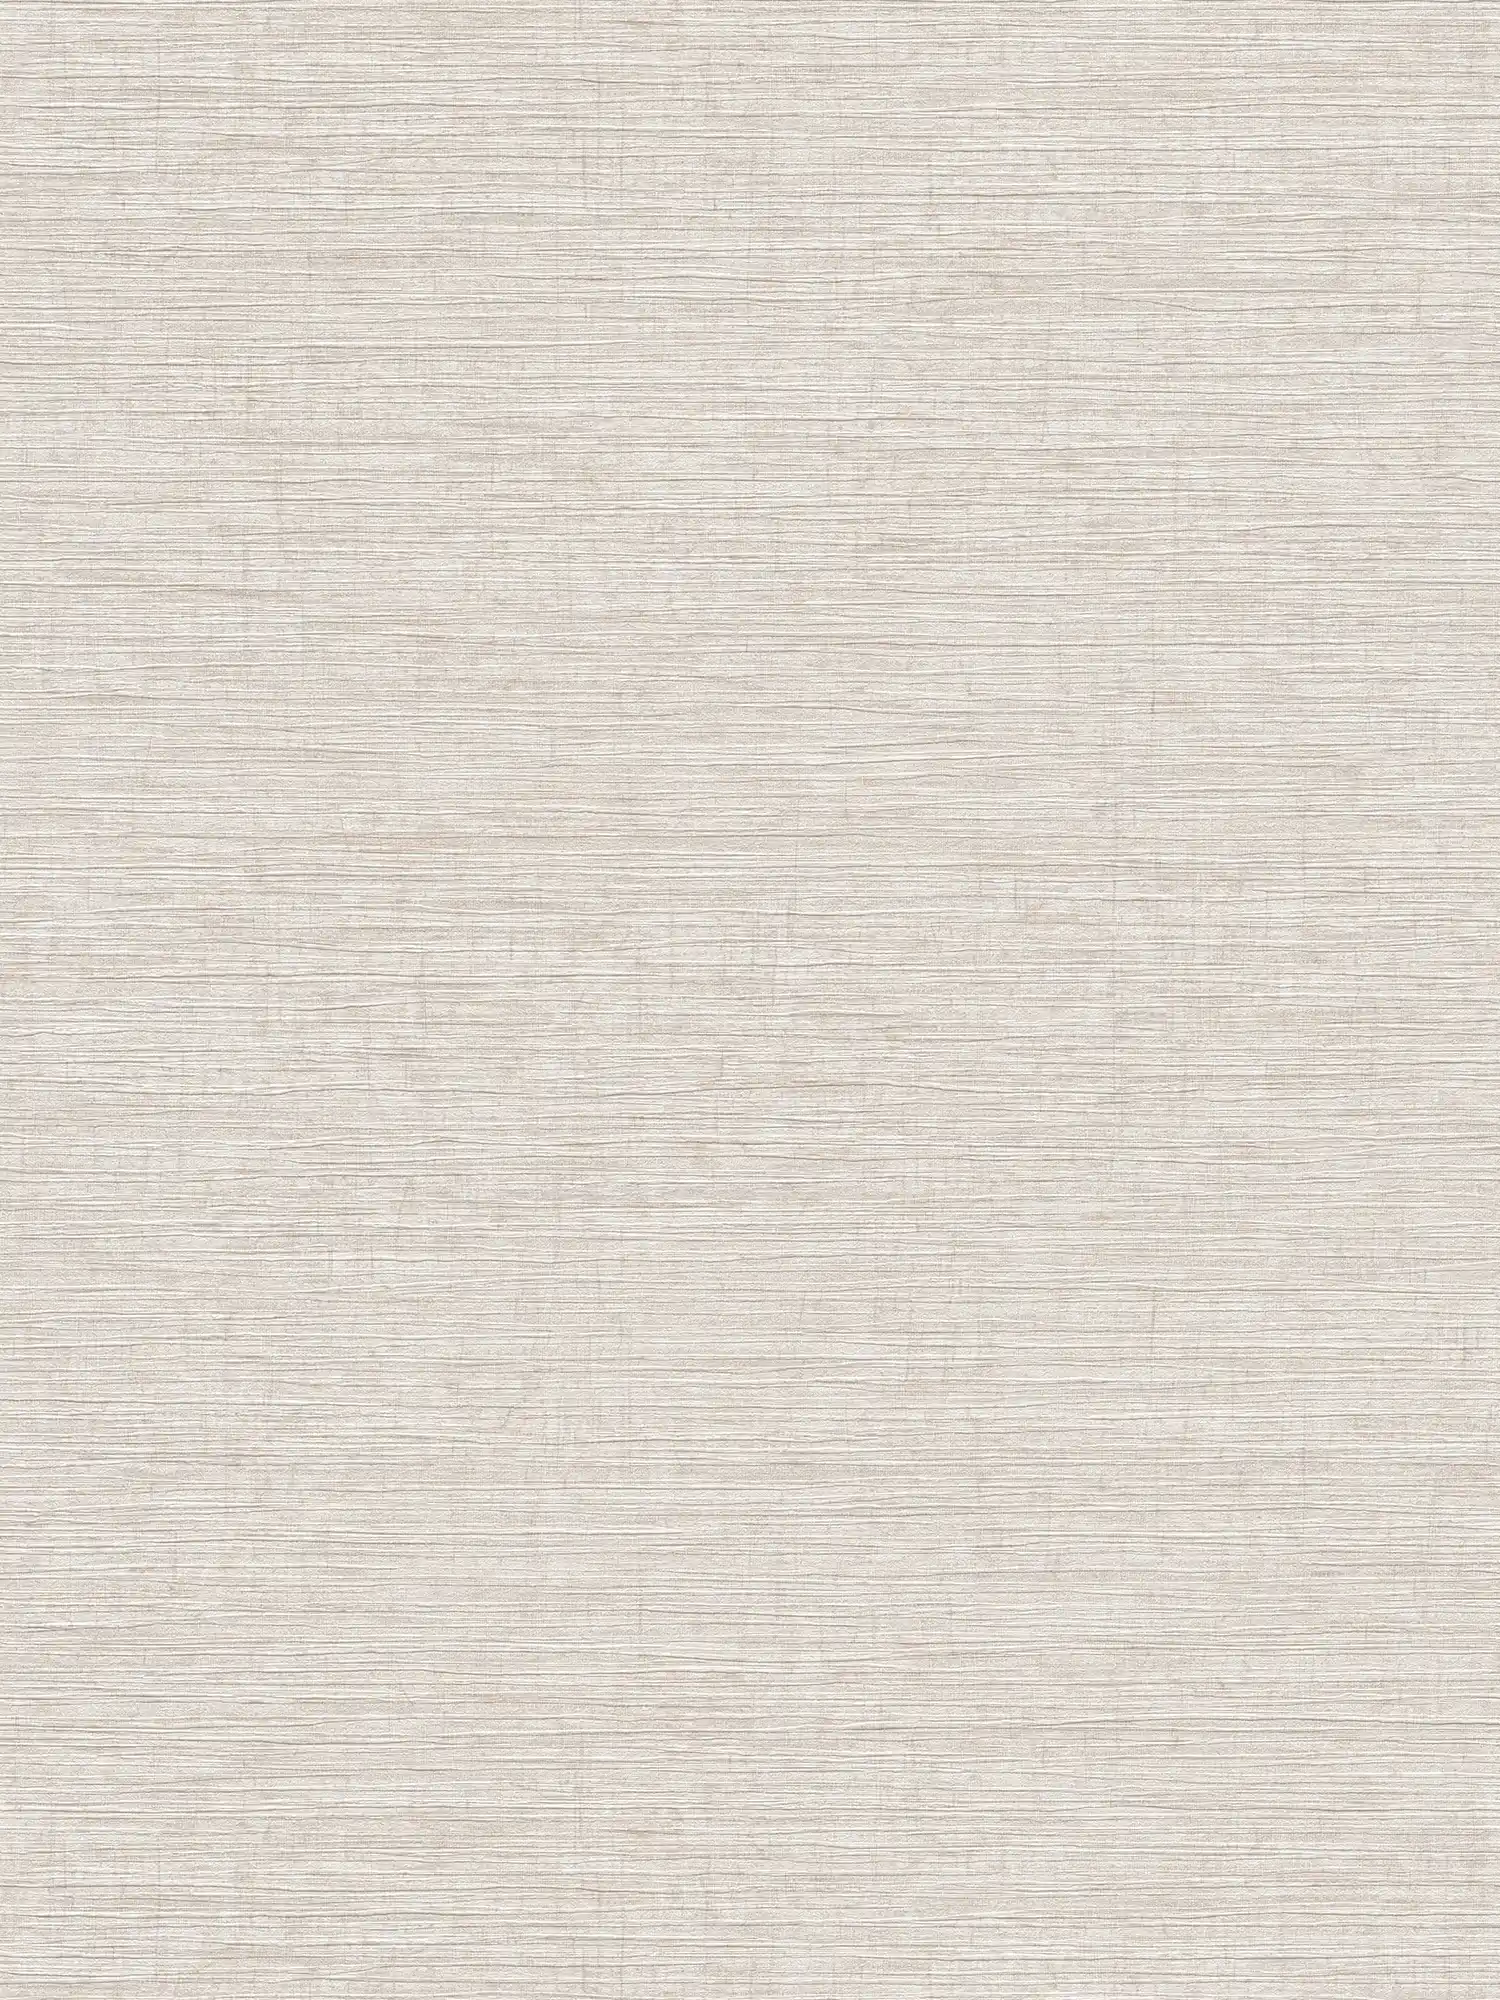 Carta da parati in tessuto non tessuto screziata con motivi tessili in rilievo - beige, marrone, grigio
